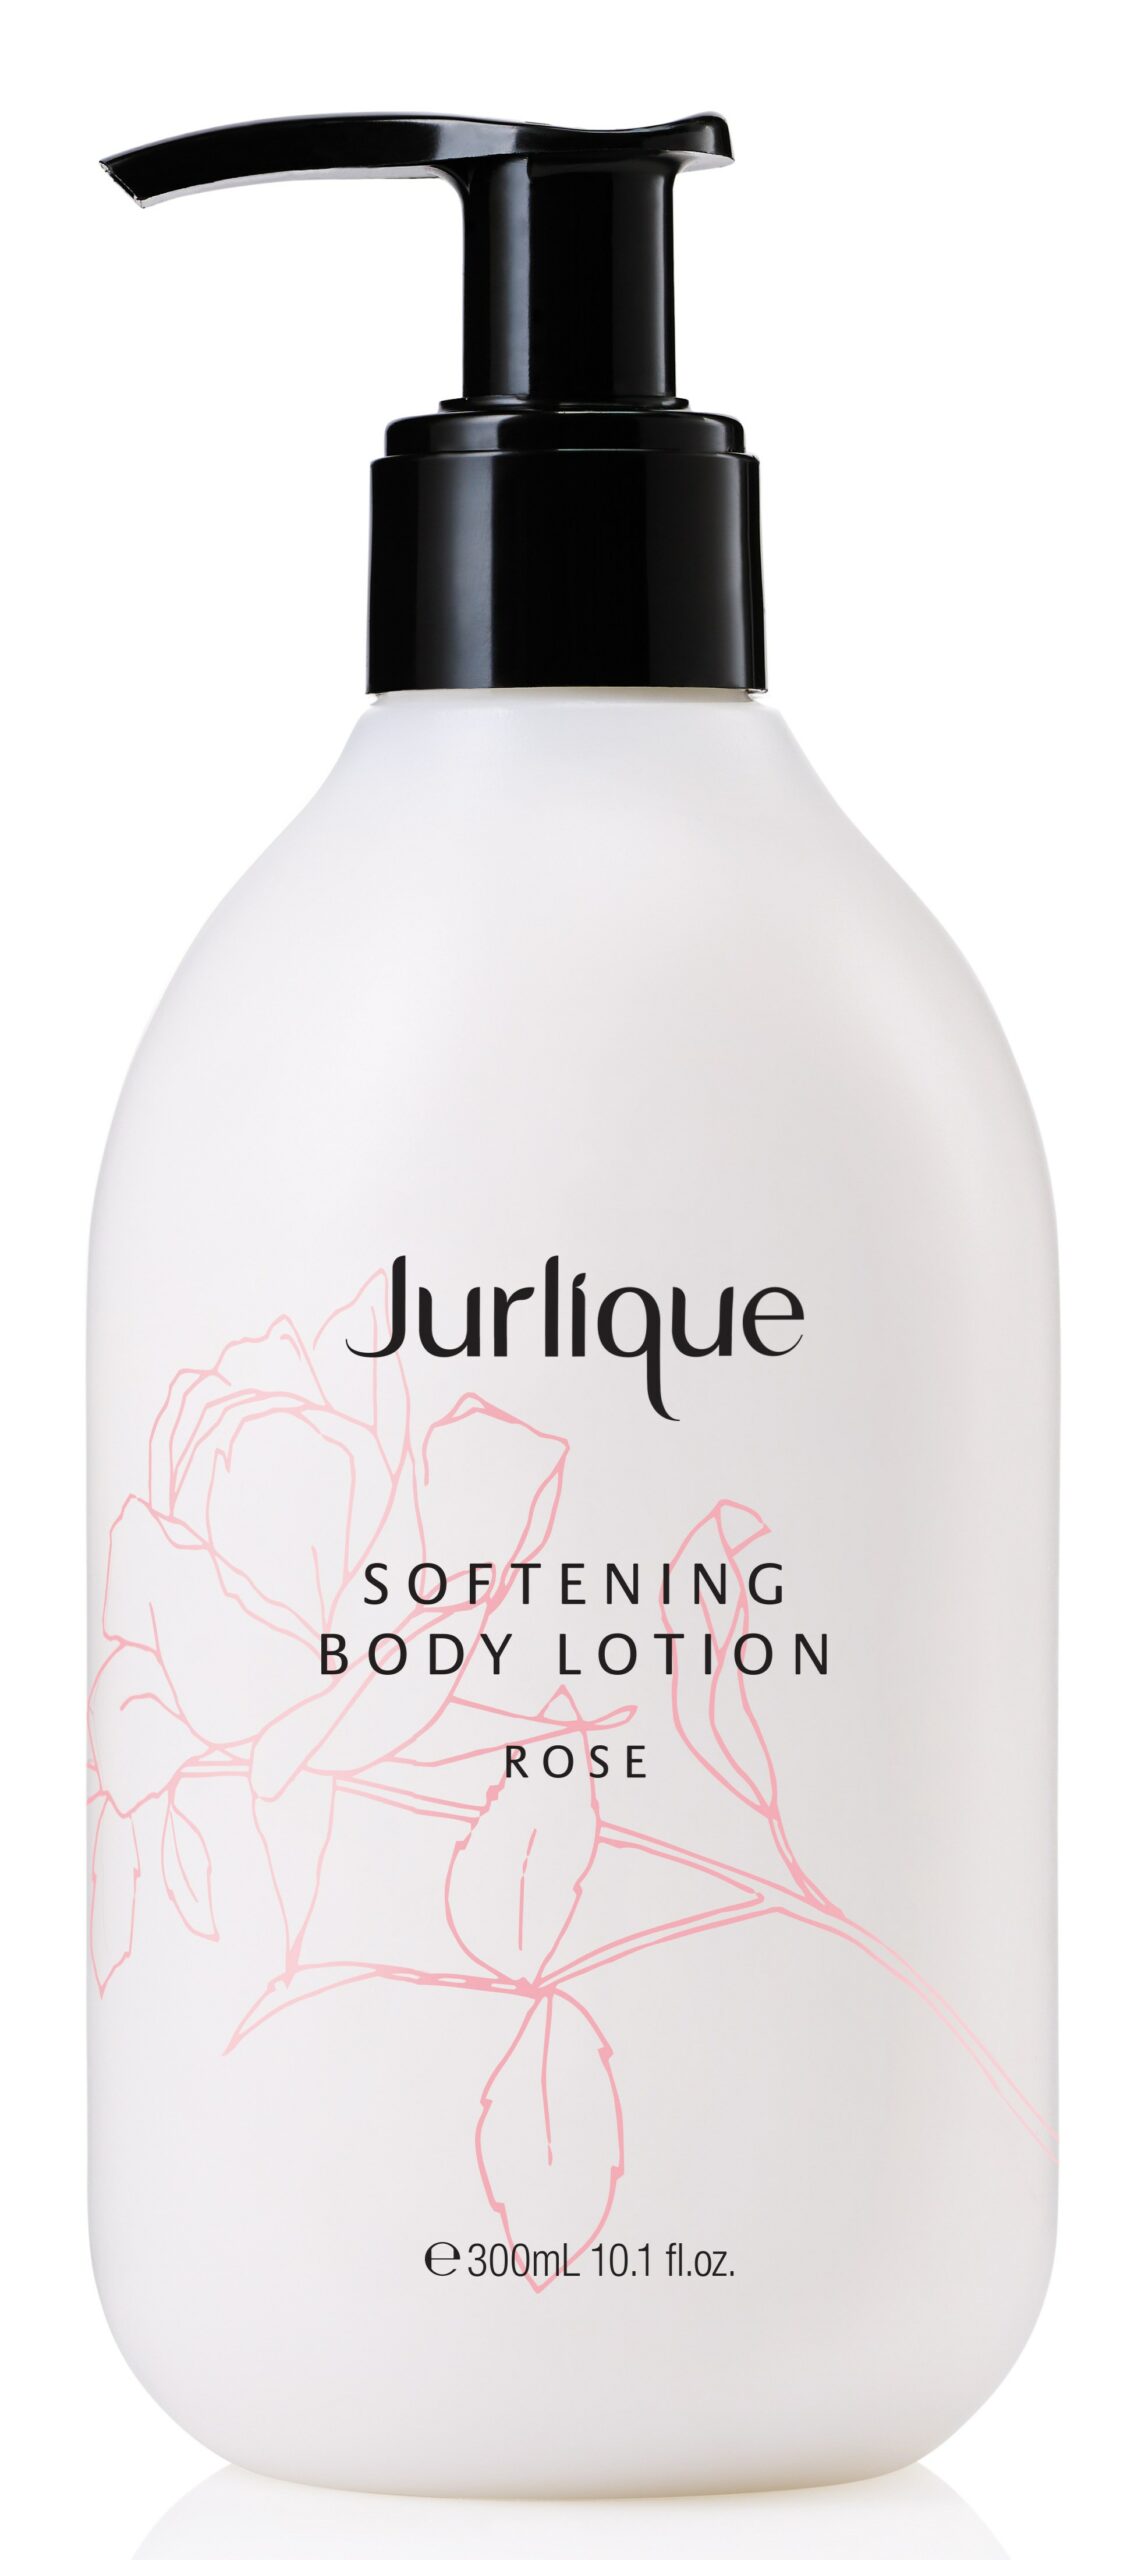 Jurlique softening body lotion